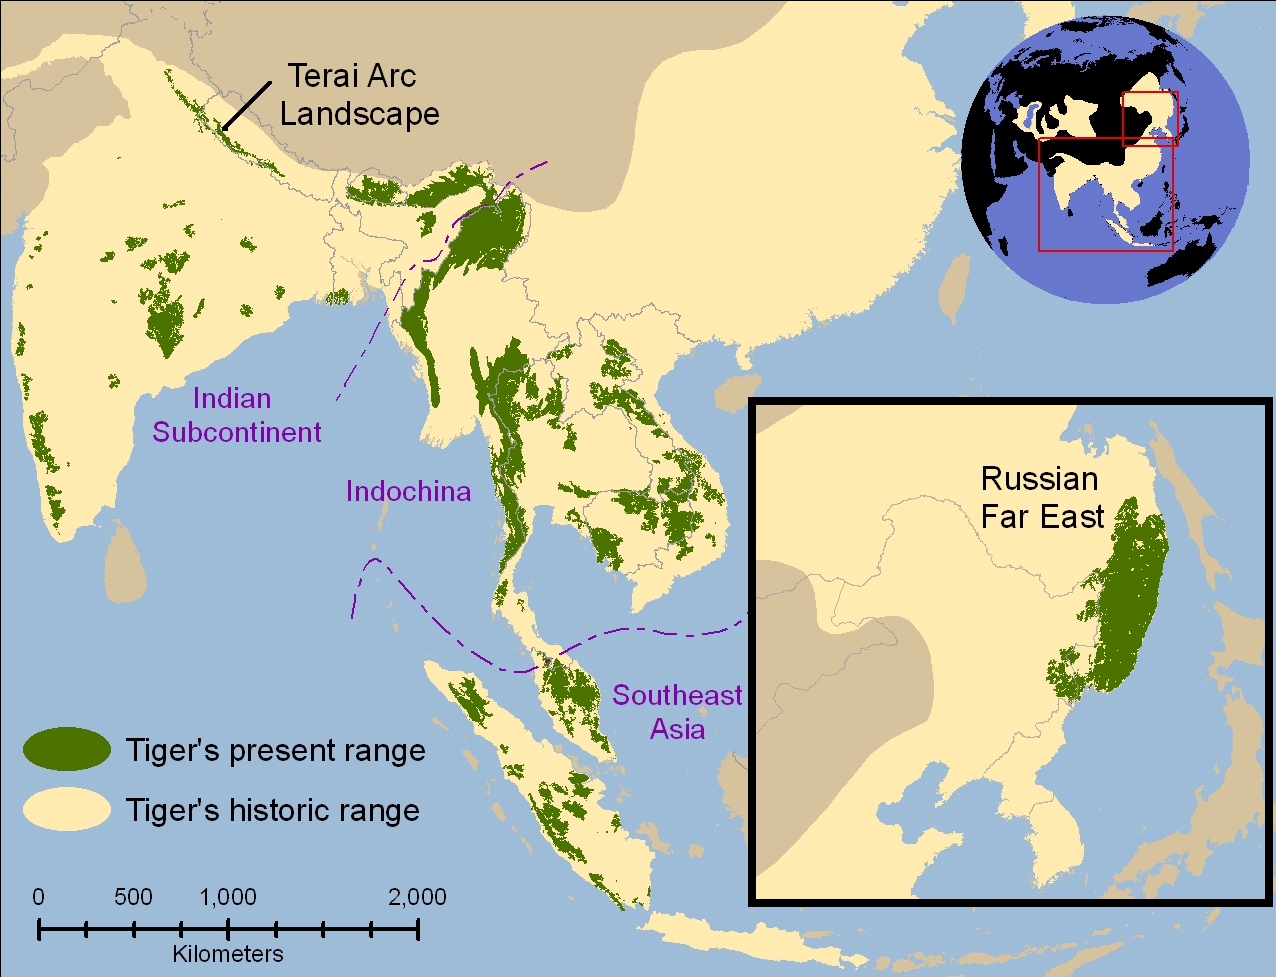 Peta wilayah persebaran harimau dunia dulu dan saat ini. Apakah pernah ada harimau di daratan Kalimantan? Sumber: wikipedia